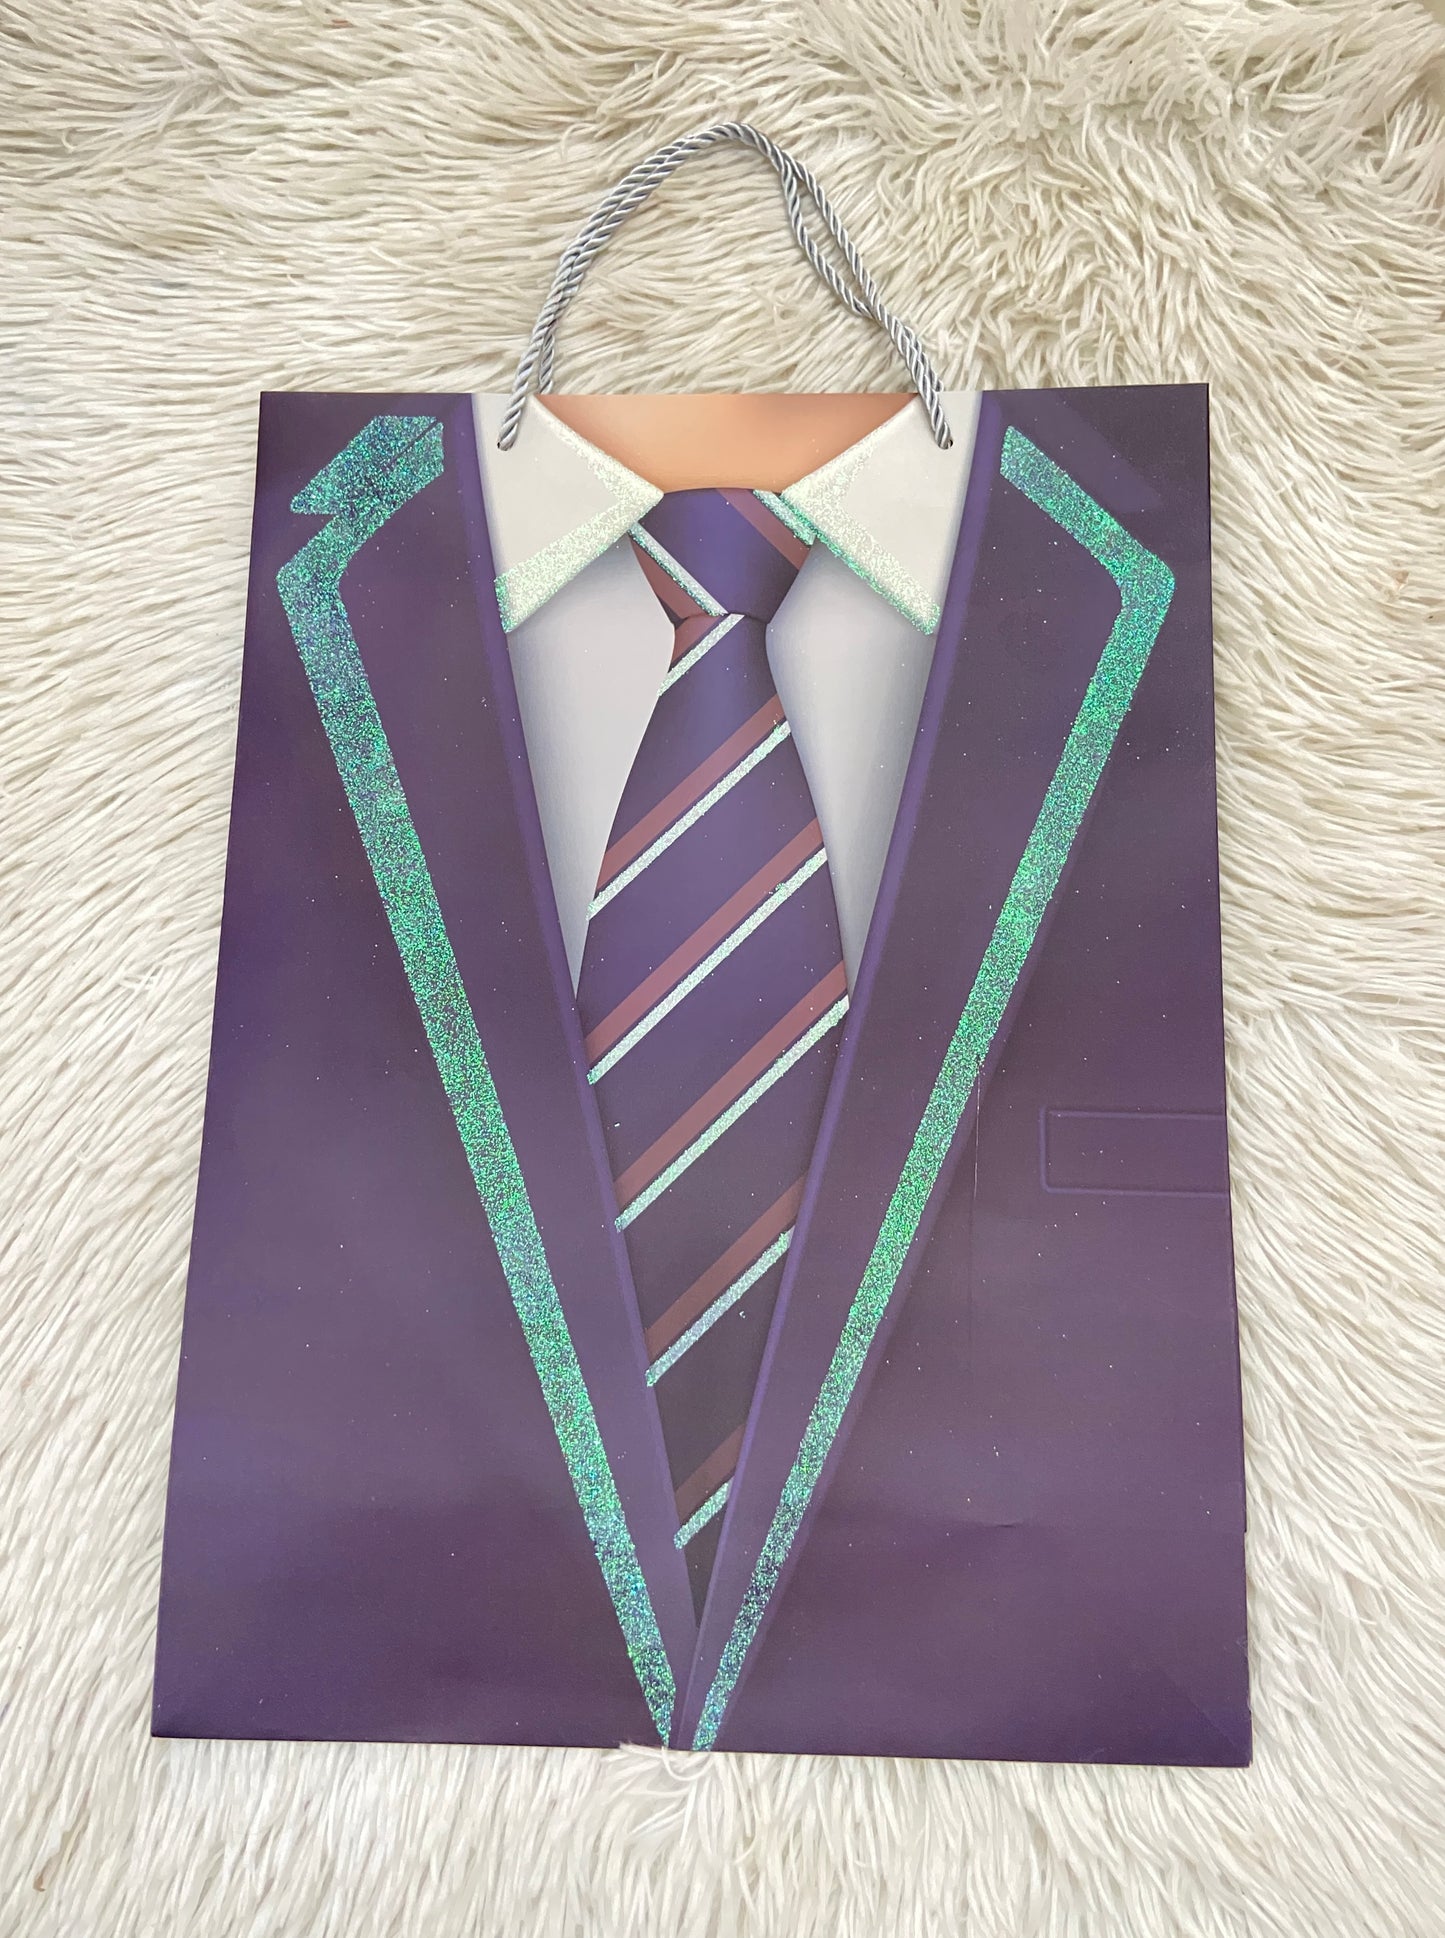 Shopping azul Marino con estampado de una corbata y brillos en los lados.